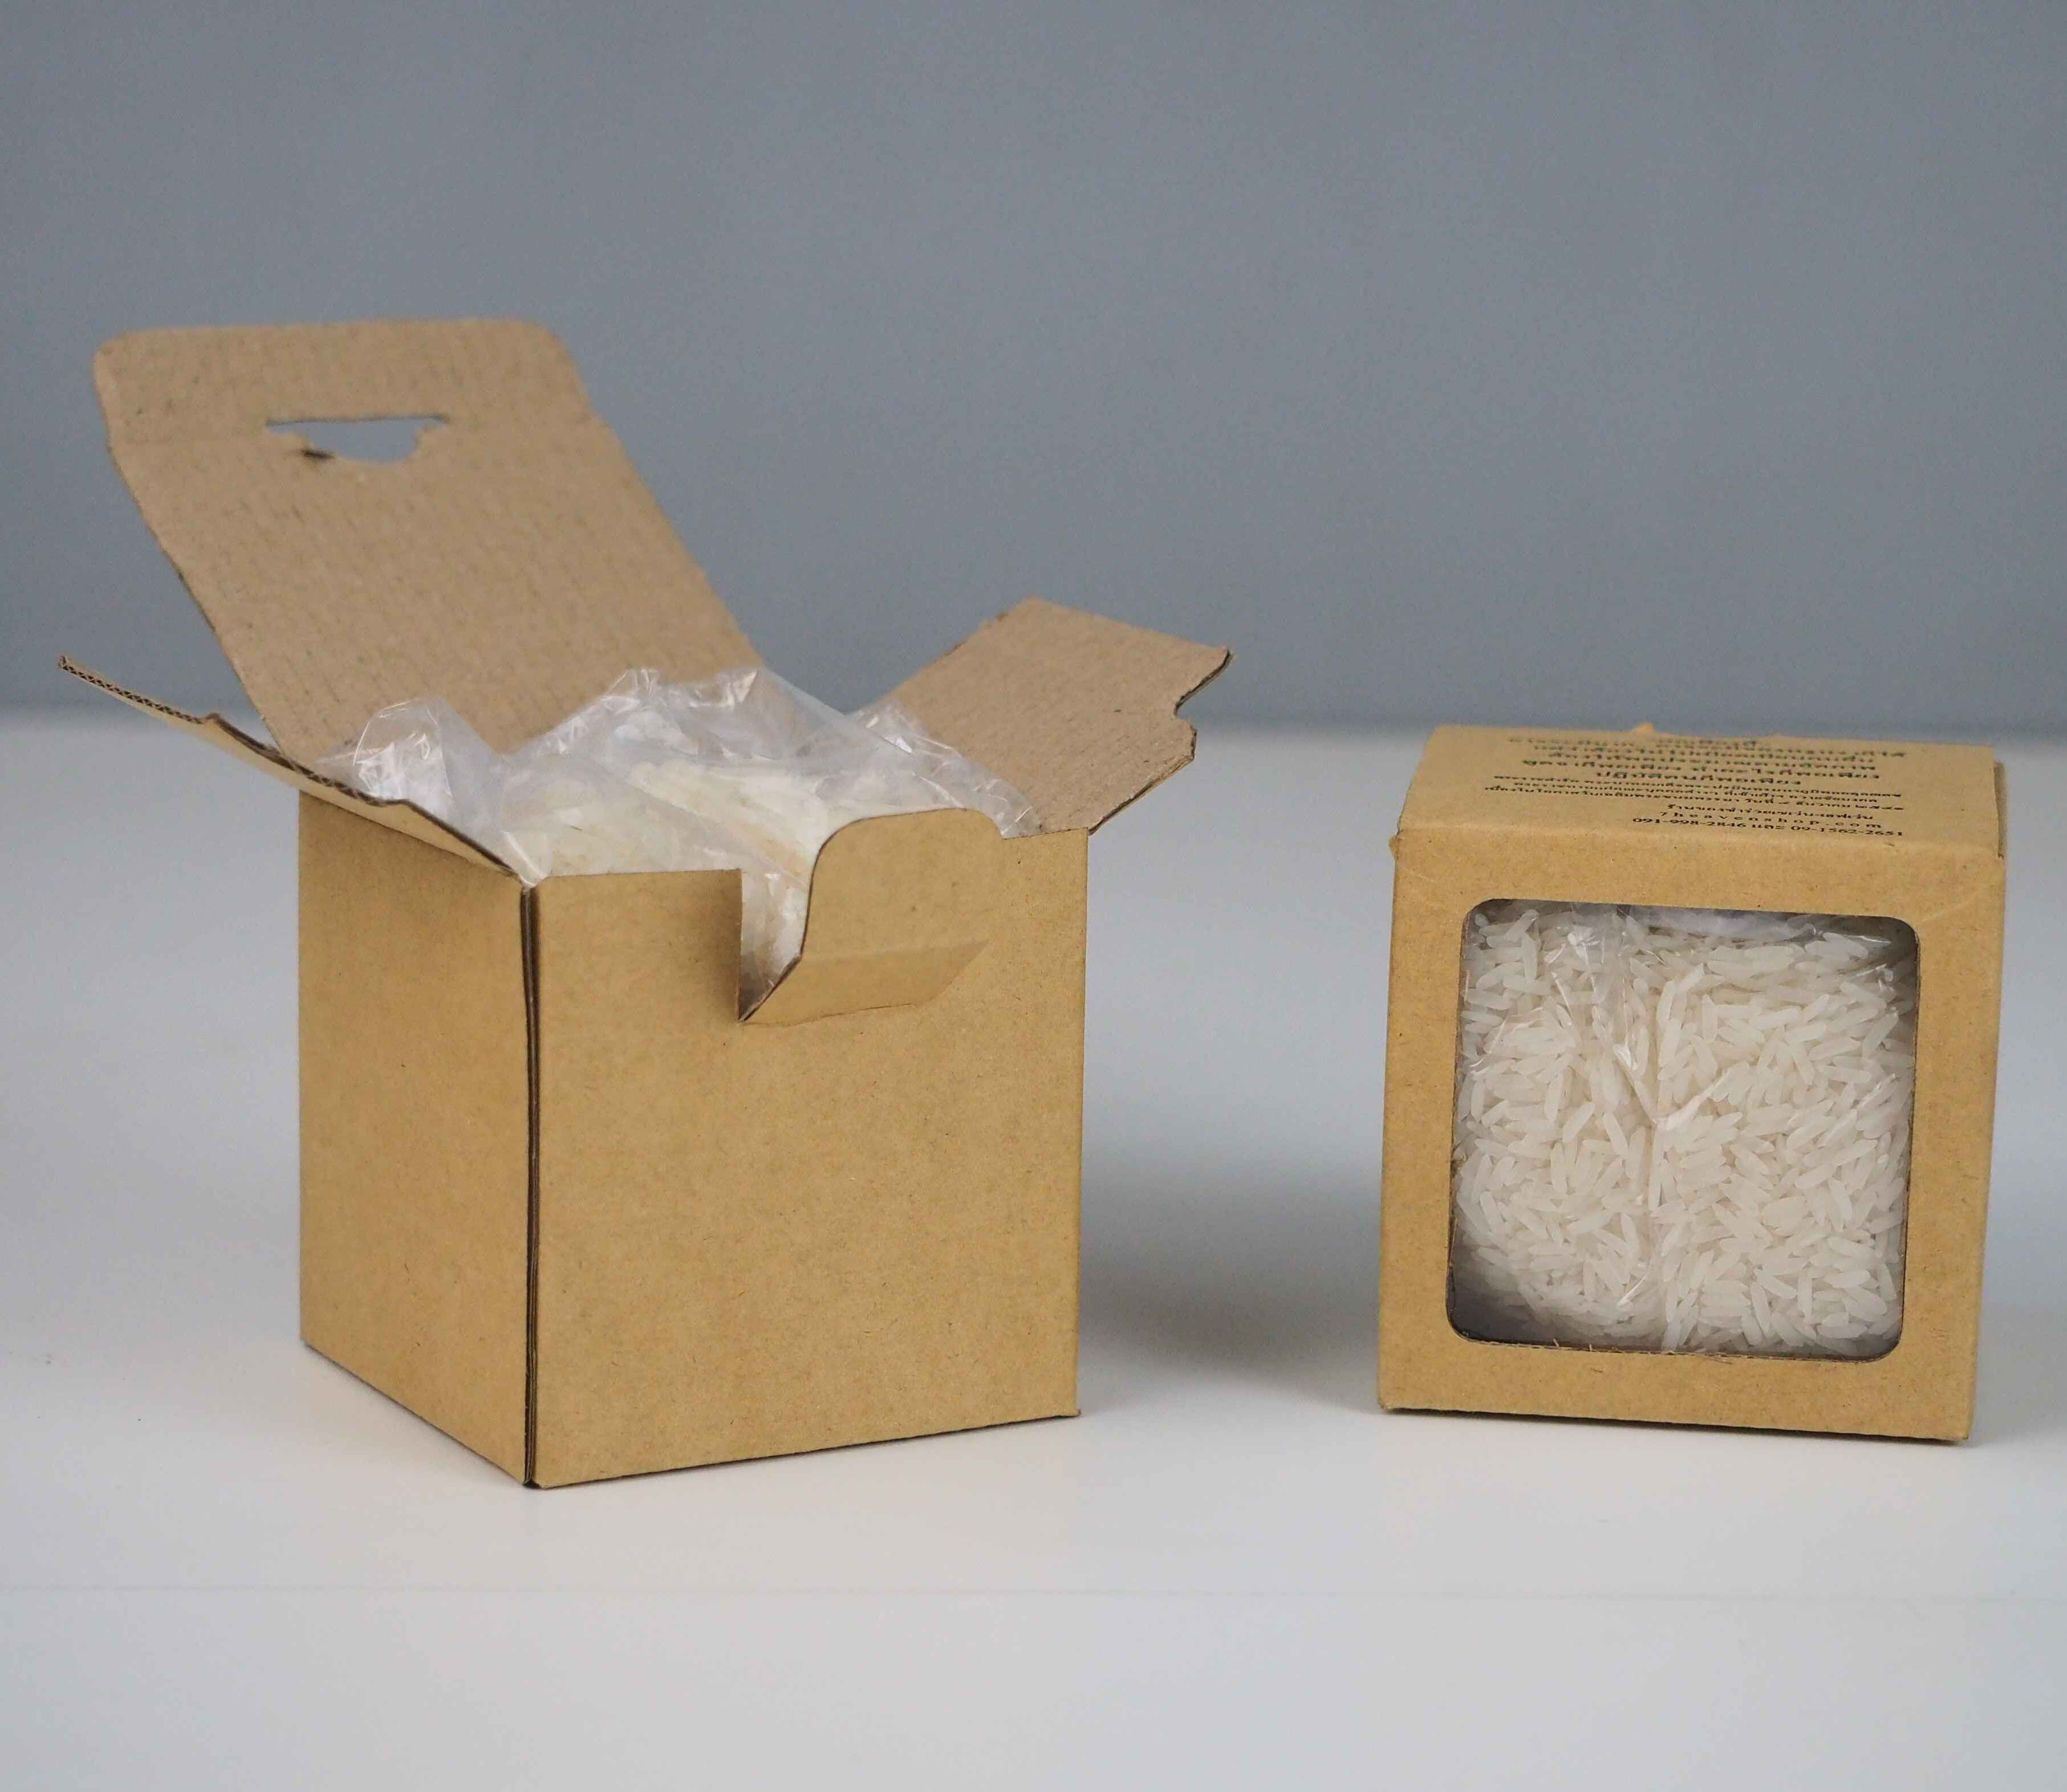 กล่องของชำร่วยข้าวสารครึ่งกิโลรับผลิตกล่องใส่ของชำร่วยใส่ข้าวสาร
เป็นกล่องรูปแบบฝาเียบก้นขัด